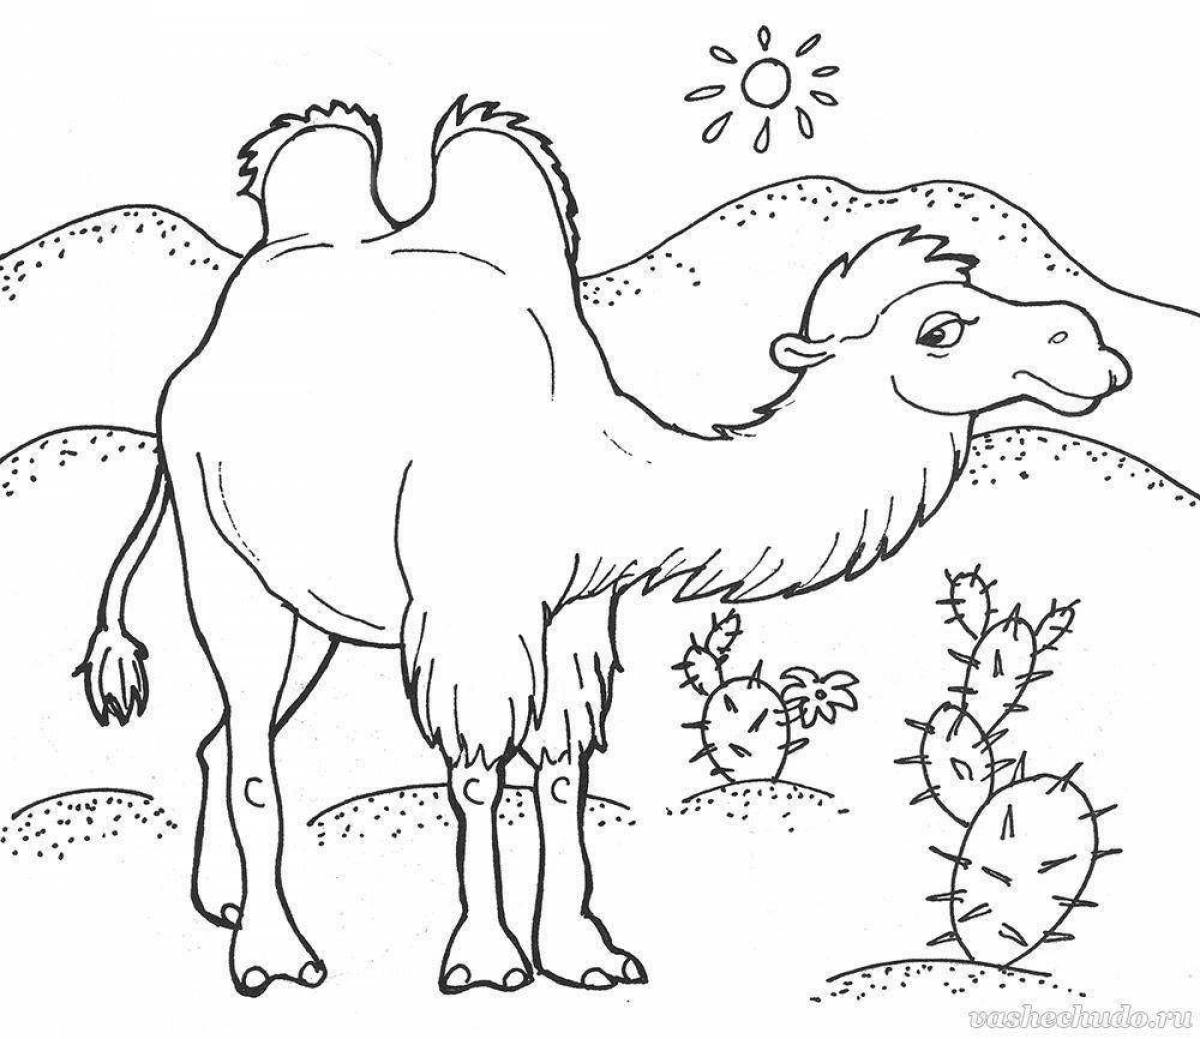 Забавная раскраска верблюда для детей